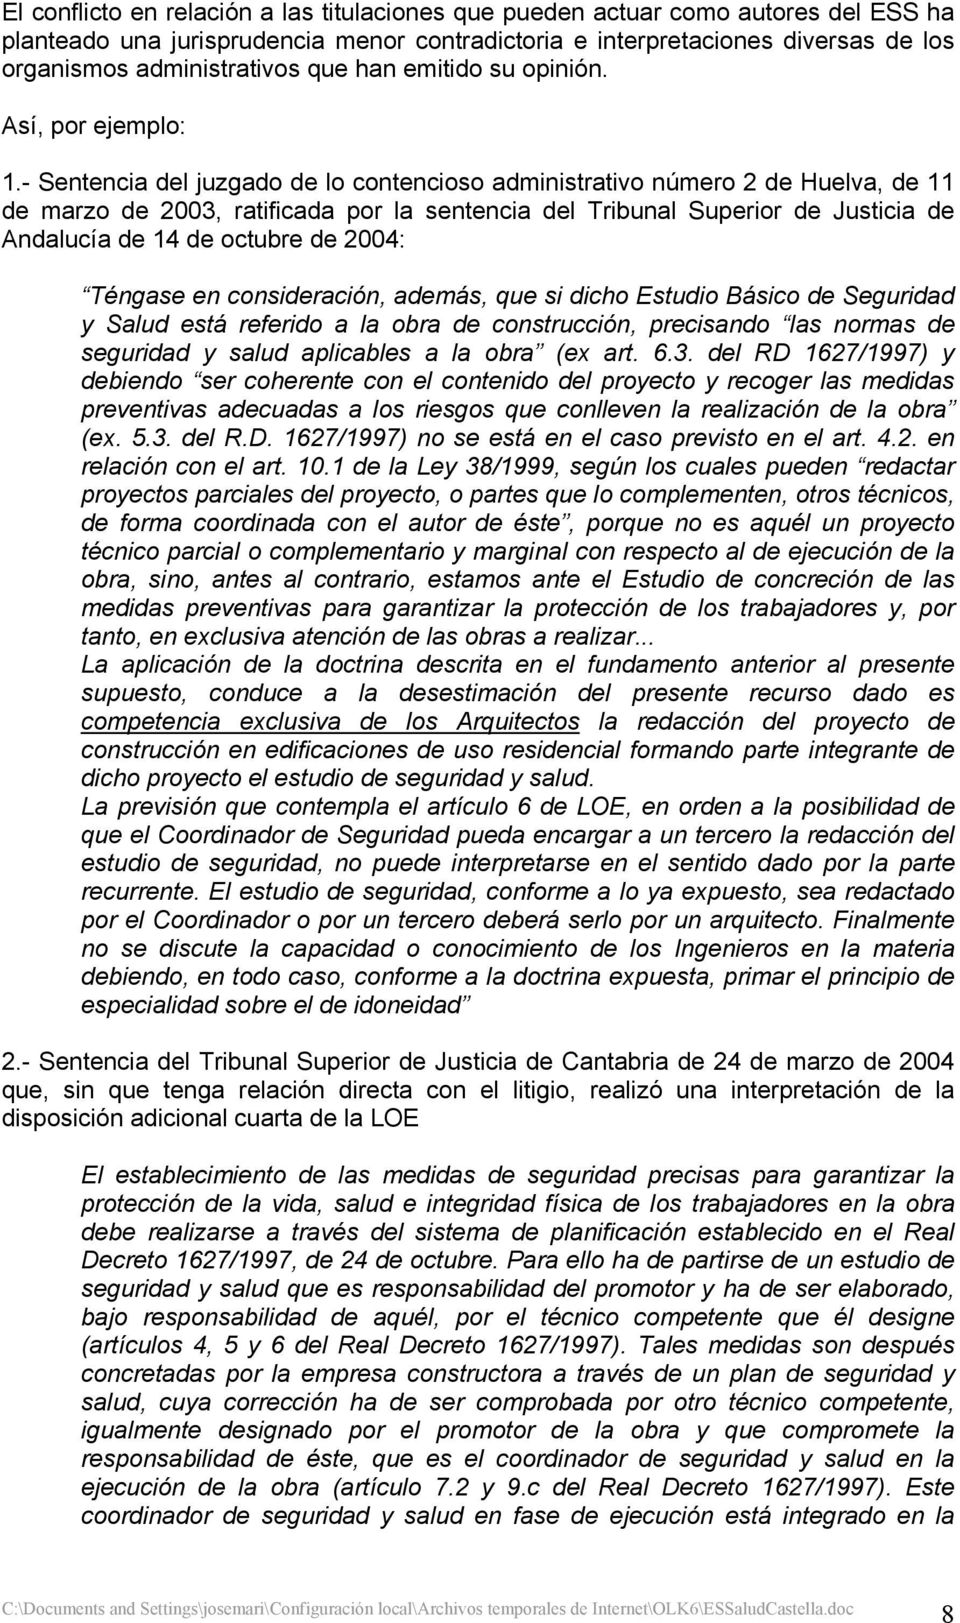 - Sentencia del juzgado de lo contencioso administrativo número 2 de Huelva, de 11 de marzo de 2003, ratificada por la sentencia del Tribunal Superior de Justicia de Andalucía de 14 de octubre de